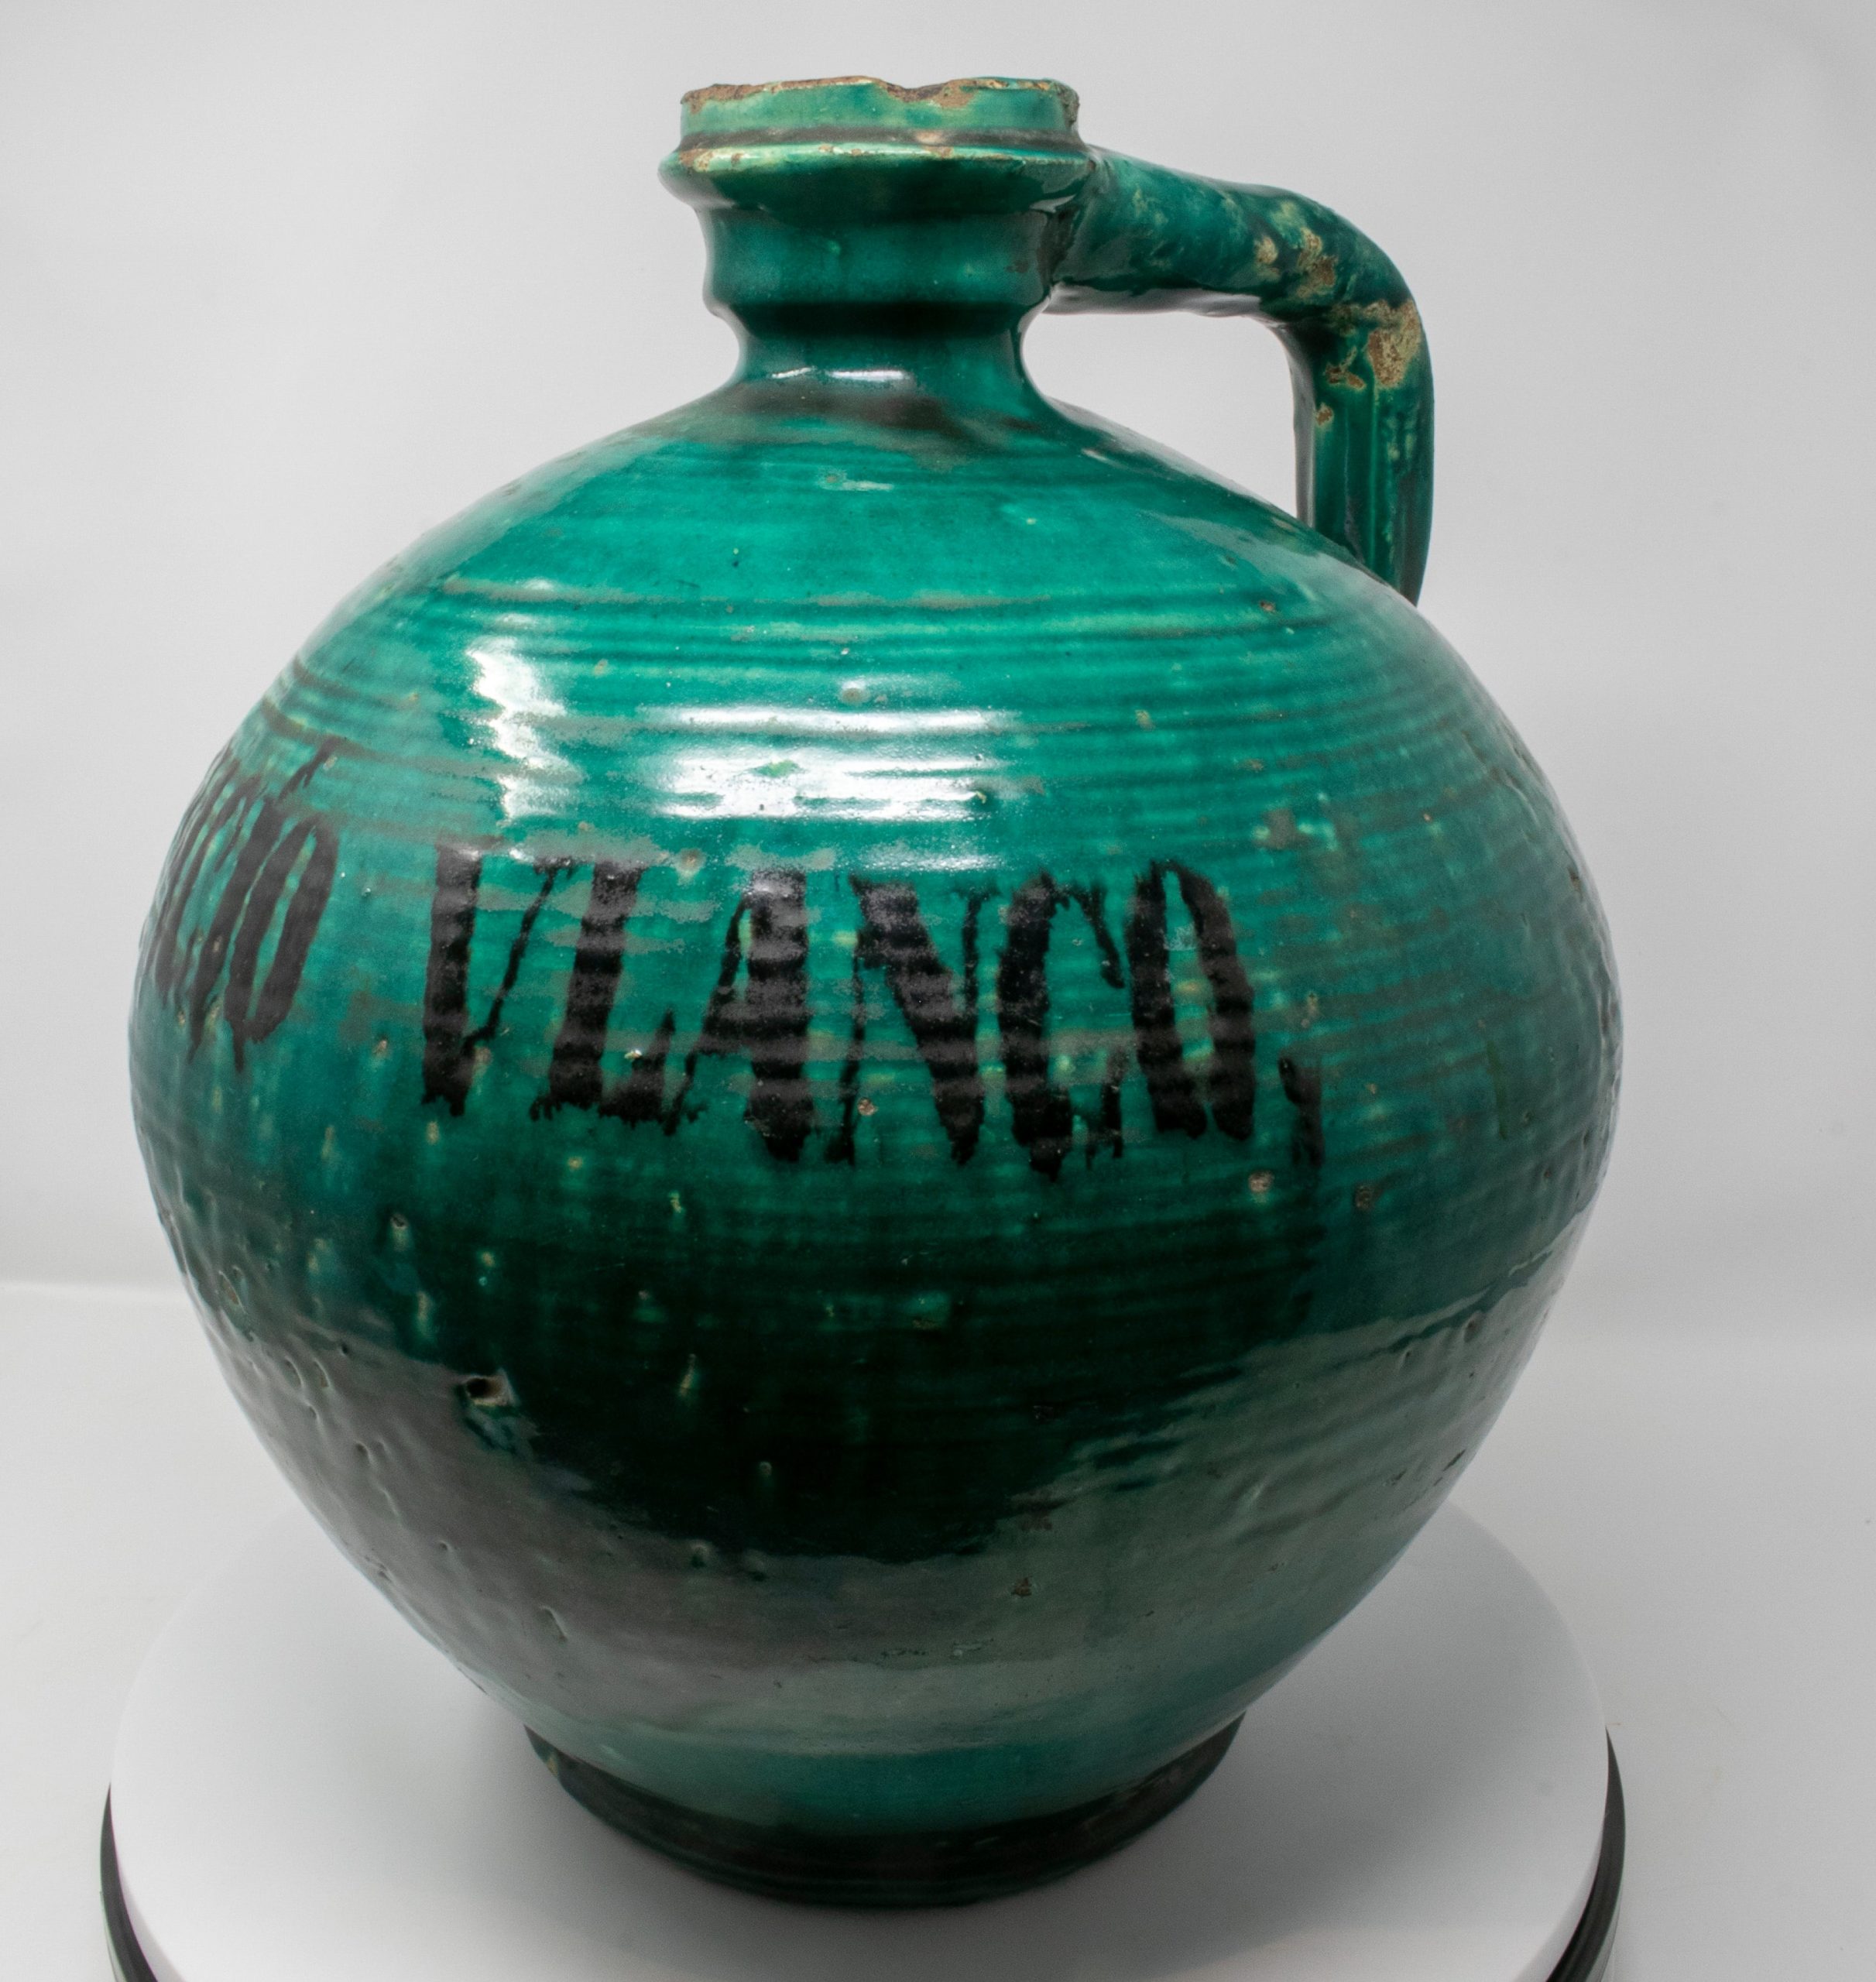 Jarrón Ciego Esmaltado en Verde con la Leyenda "Bonifacio Vlanco", del Siglo XIX